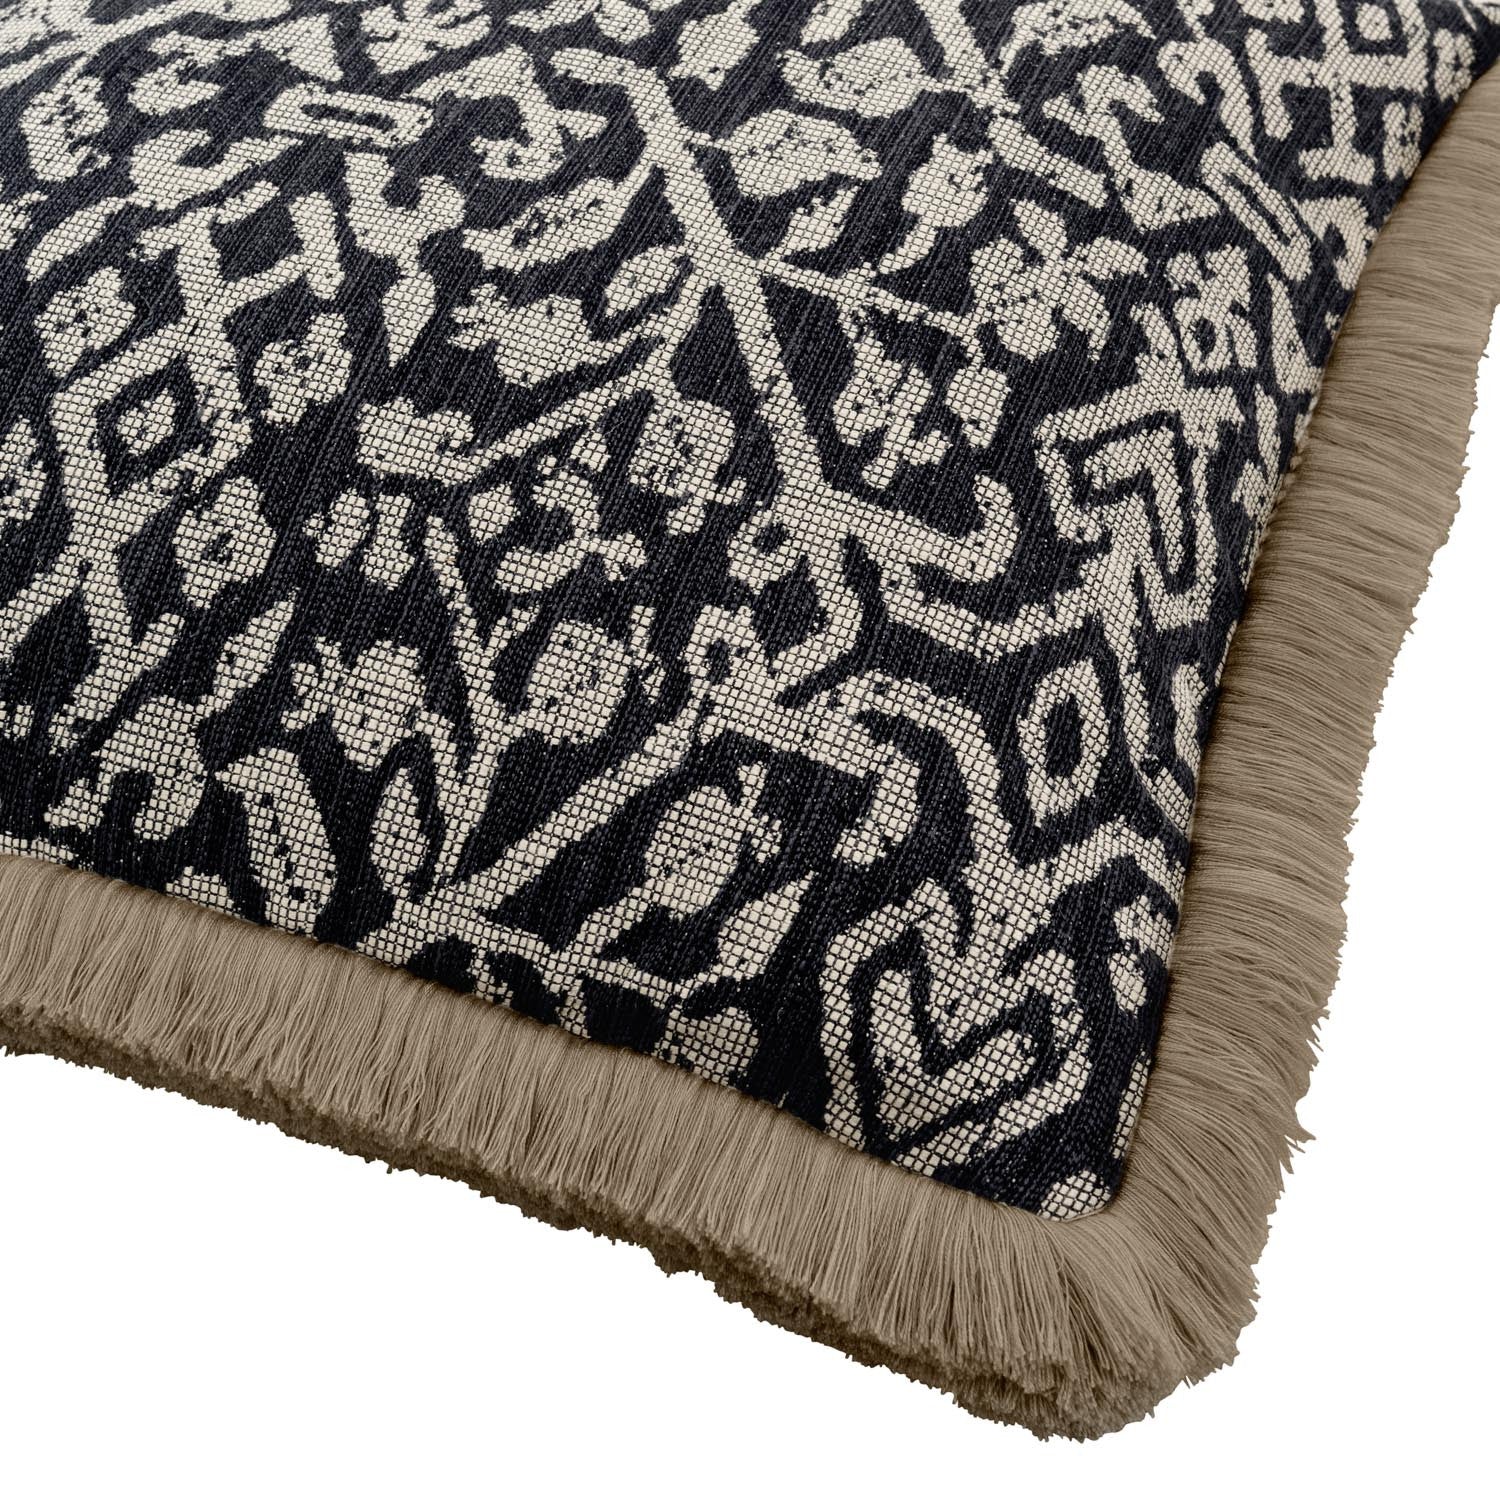 CUSCO Charcoal Woven Cushion - Warner House